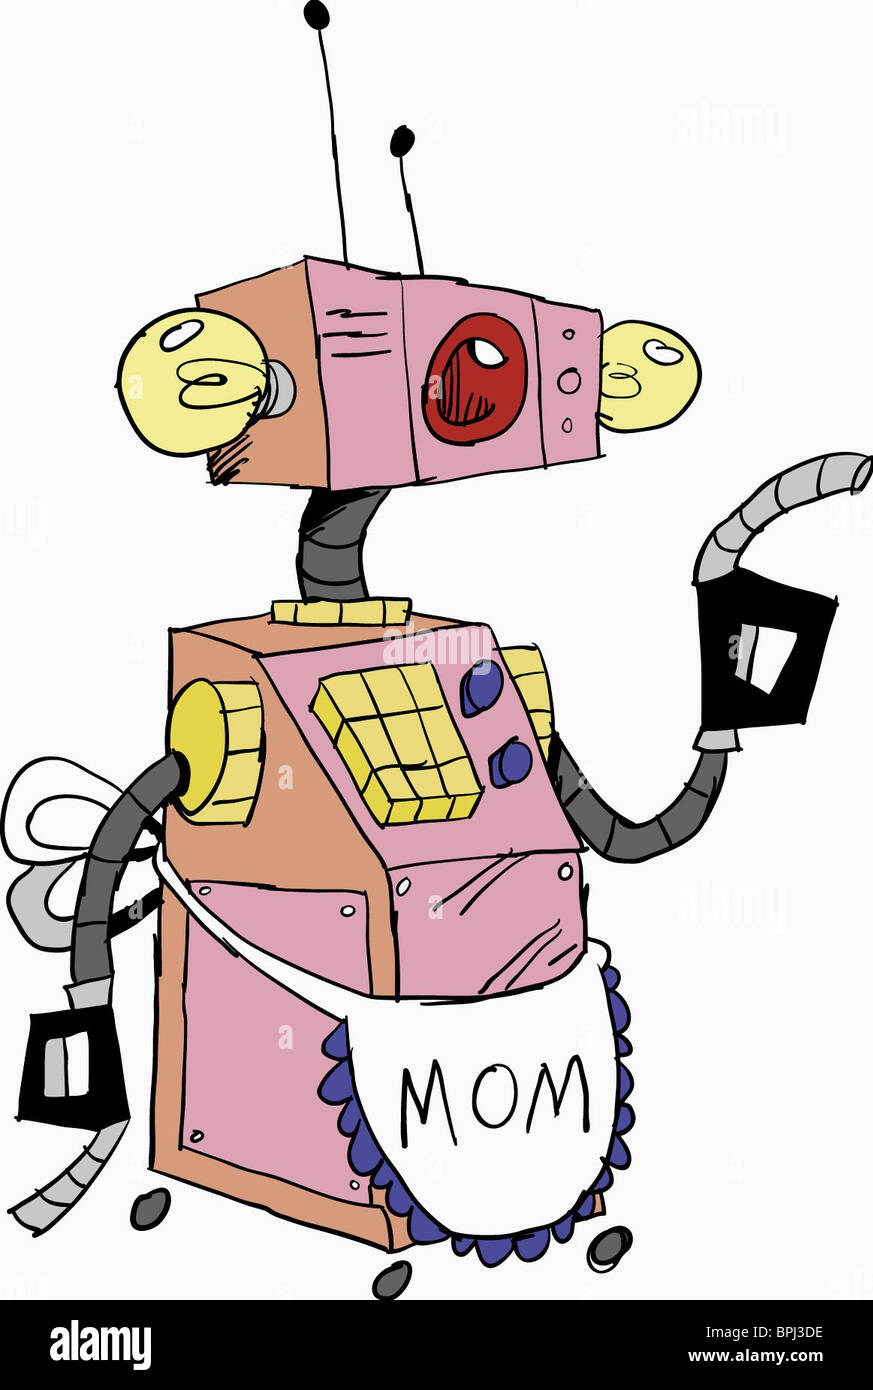 MOM WHATEVER HAPPENED TO ROBOT JONES? (2002 Stock Photo - Alamy